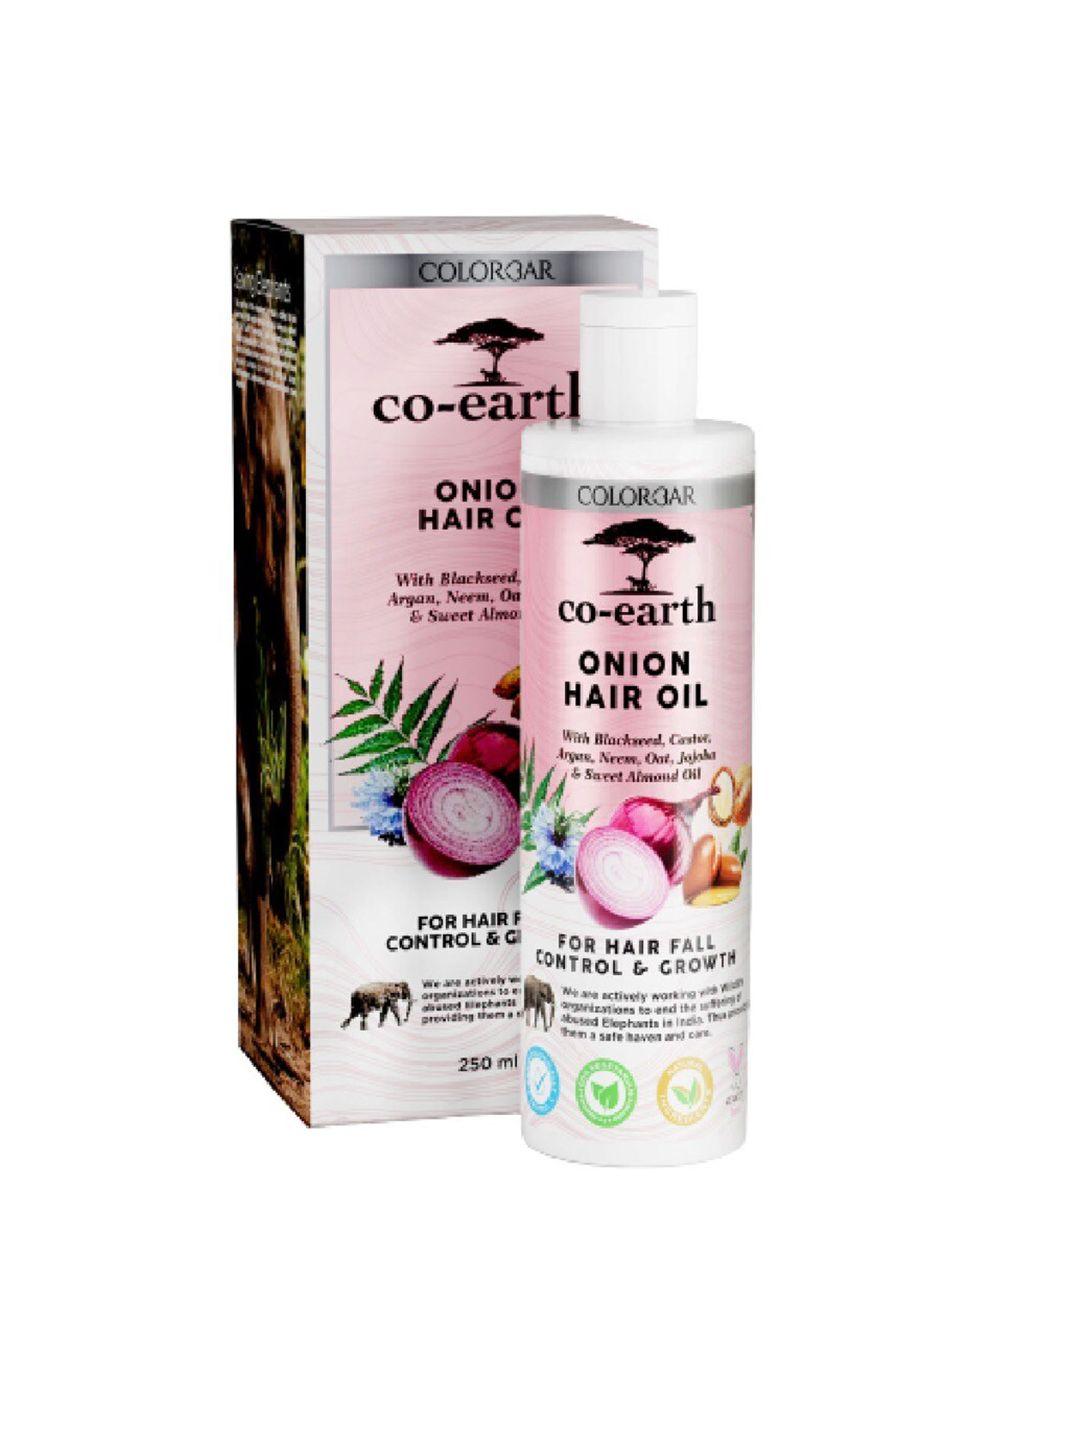 colorbar co-earth onion hair oil with argan & castor oil for hair fall control - 250ml